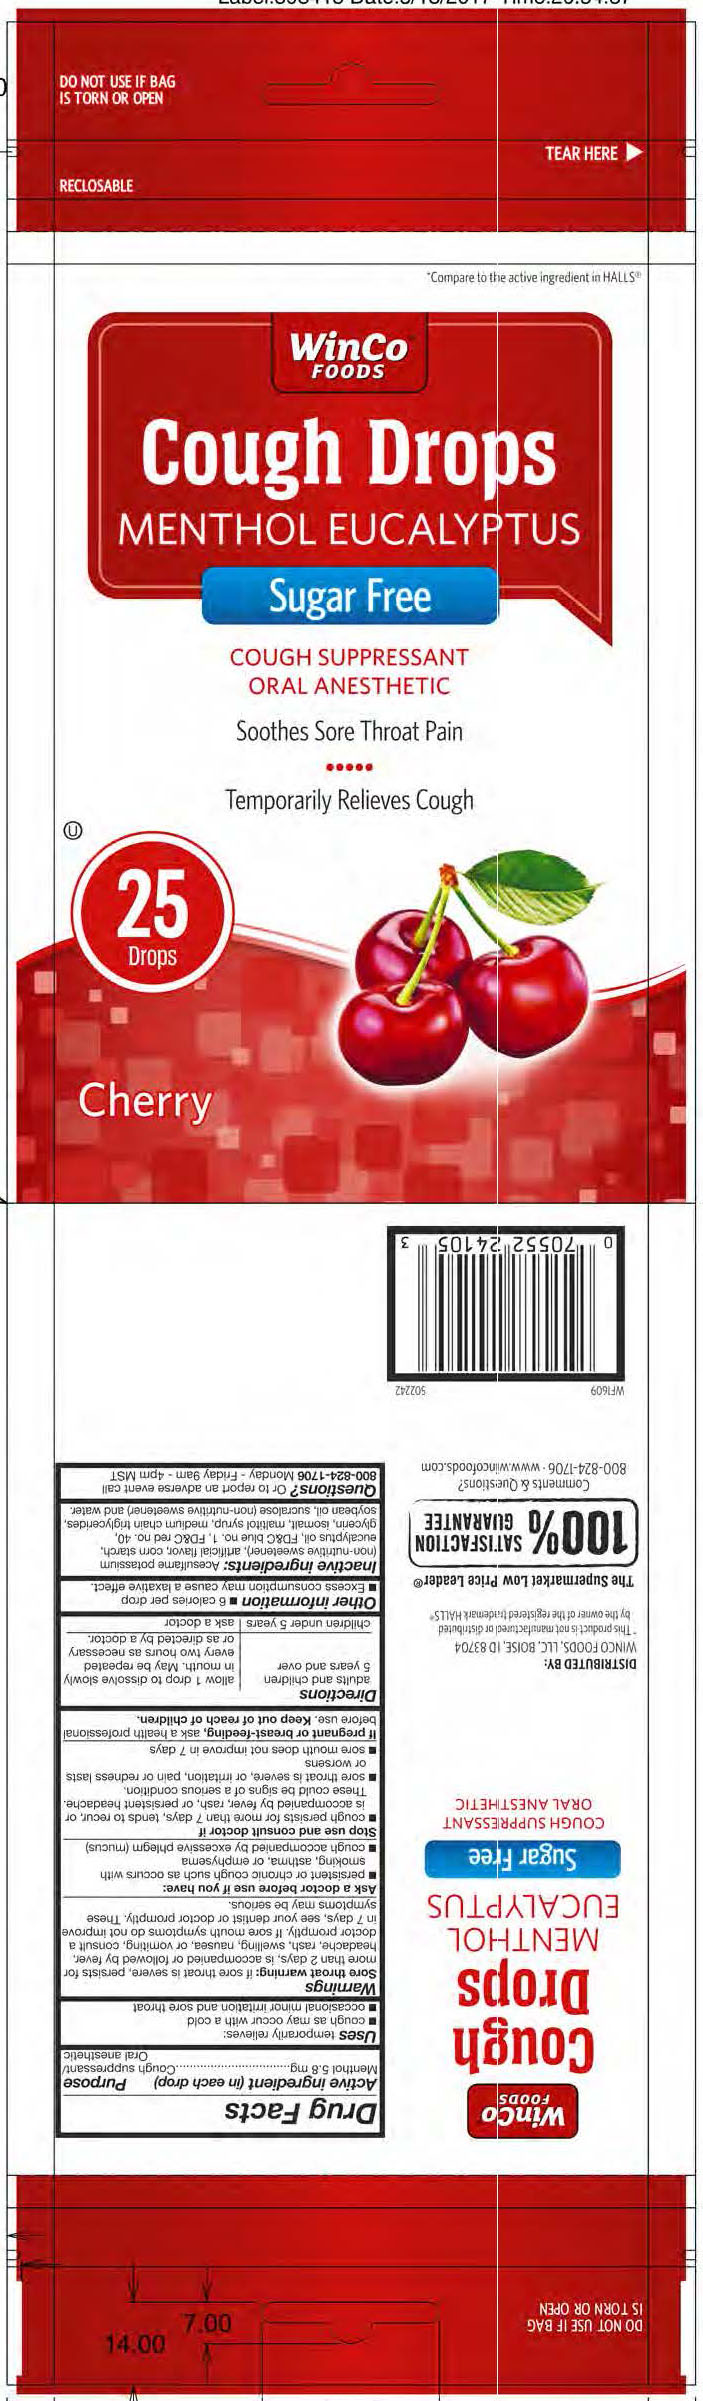 Winco SF Cherry 25ct cough drops